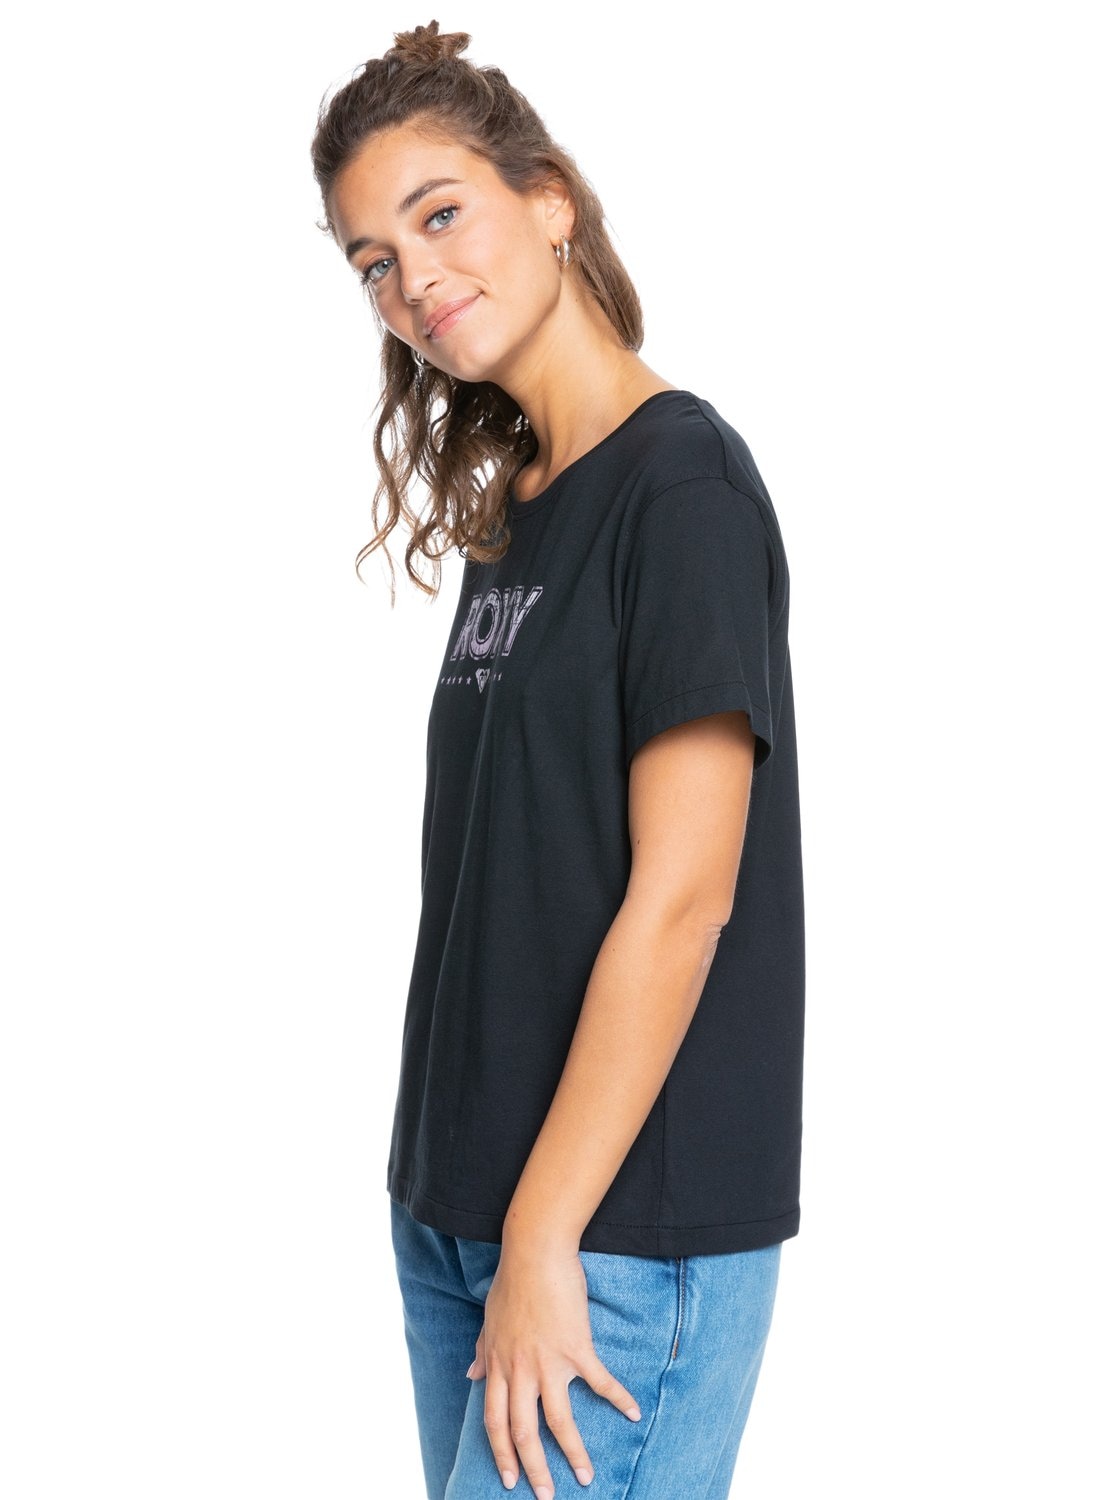 Schweiz kaufen »Sweet Evening« bei Roxy T-Shirt online Jelmoli-Versand